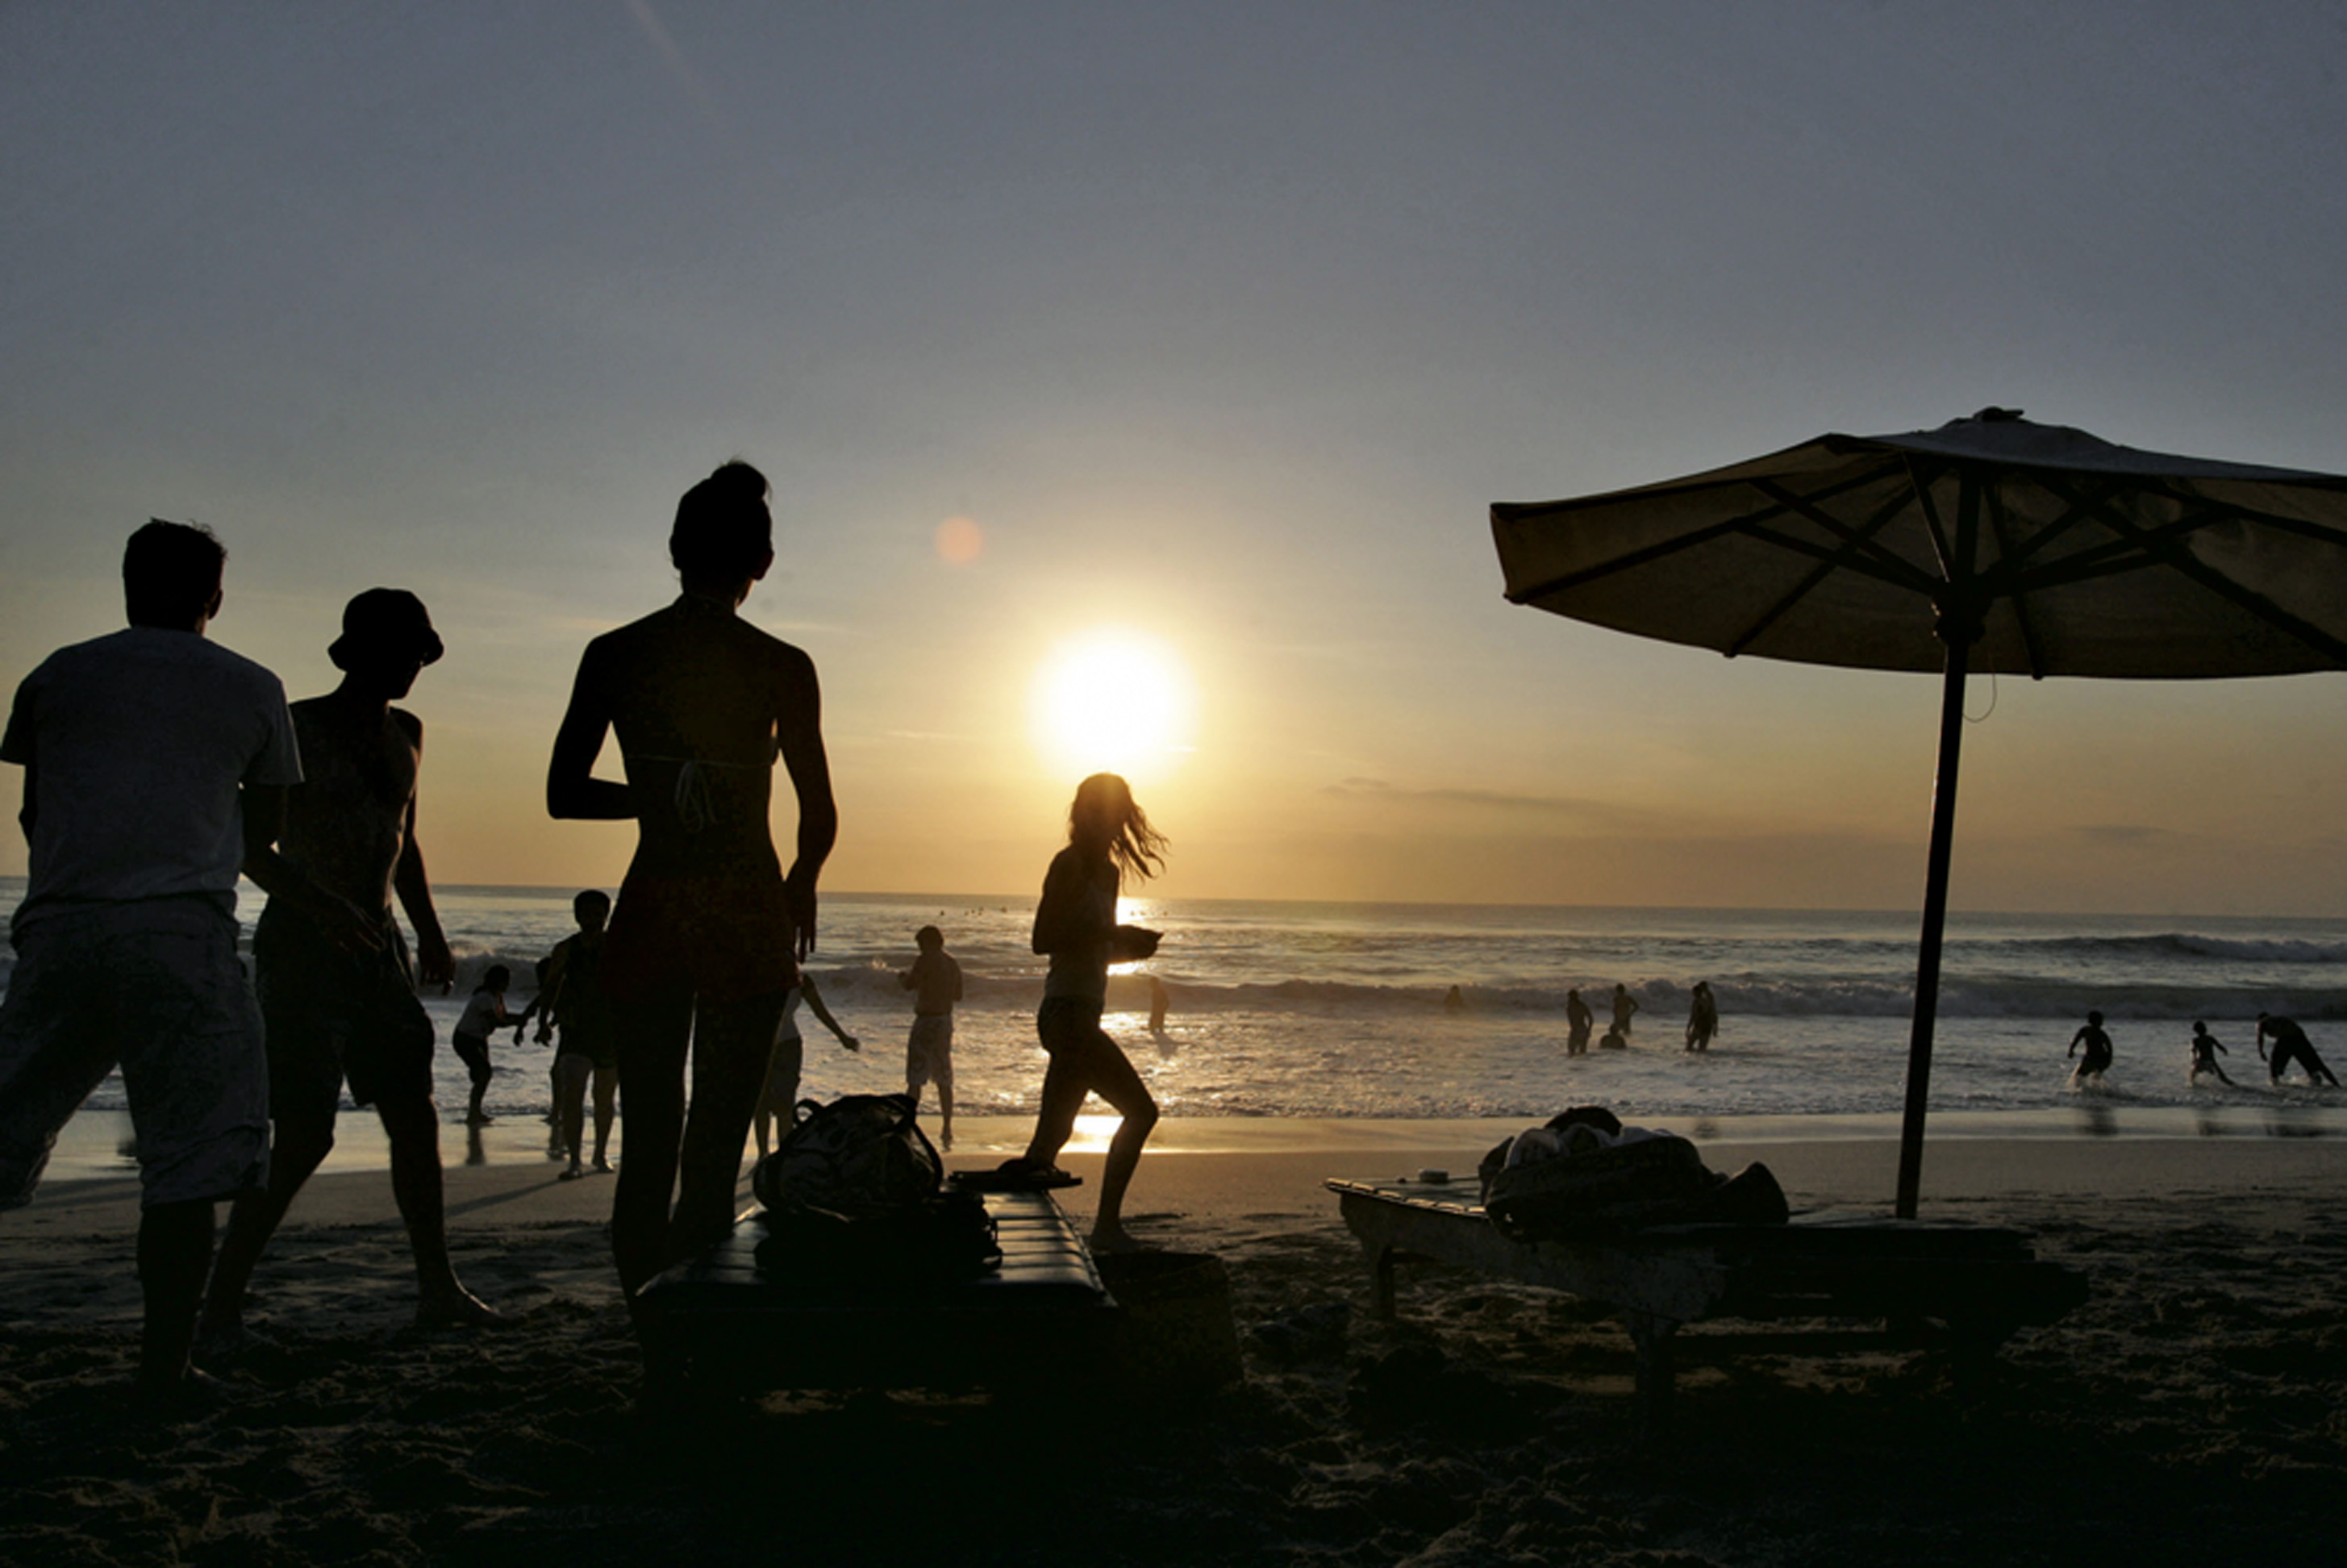 Dreamland, Bali, Indonésia - É quase uma night na praia. Rolam drinks, cabanas de aluguel, música e festas. É um lugar cheio de turistas, principalmente europeus